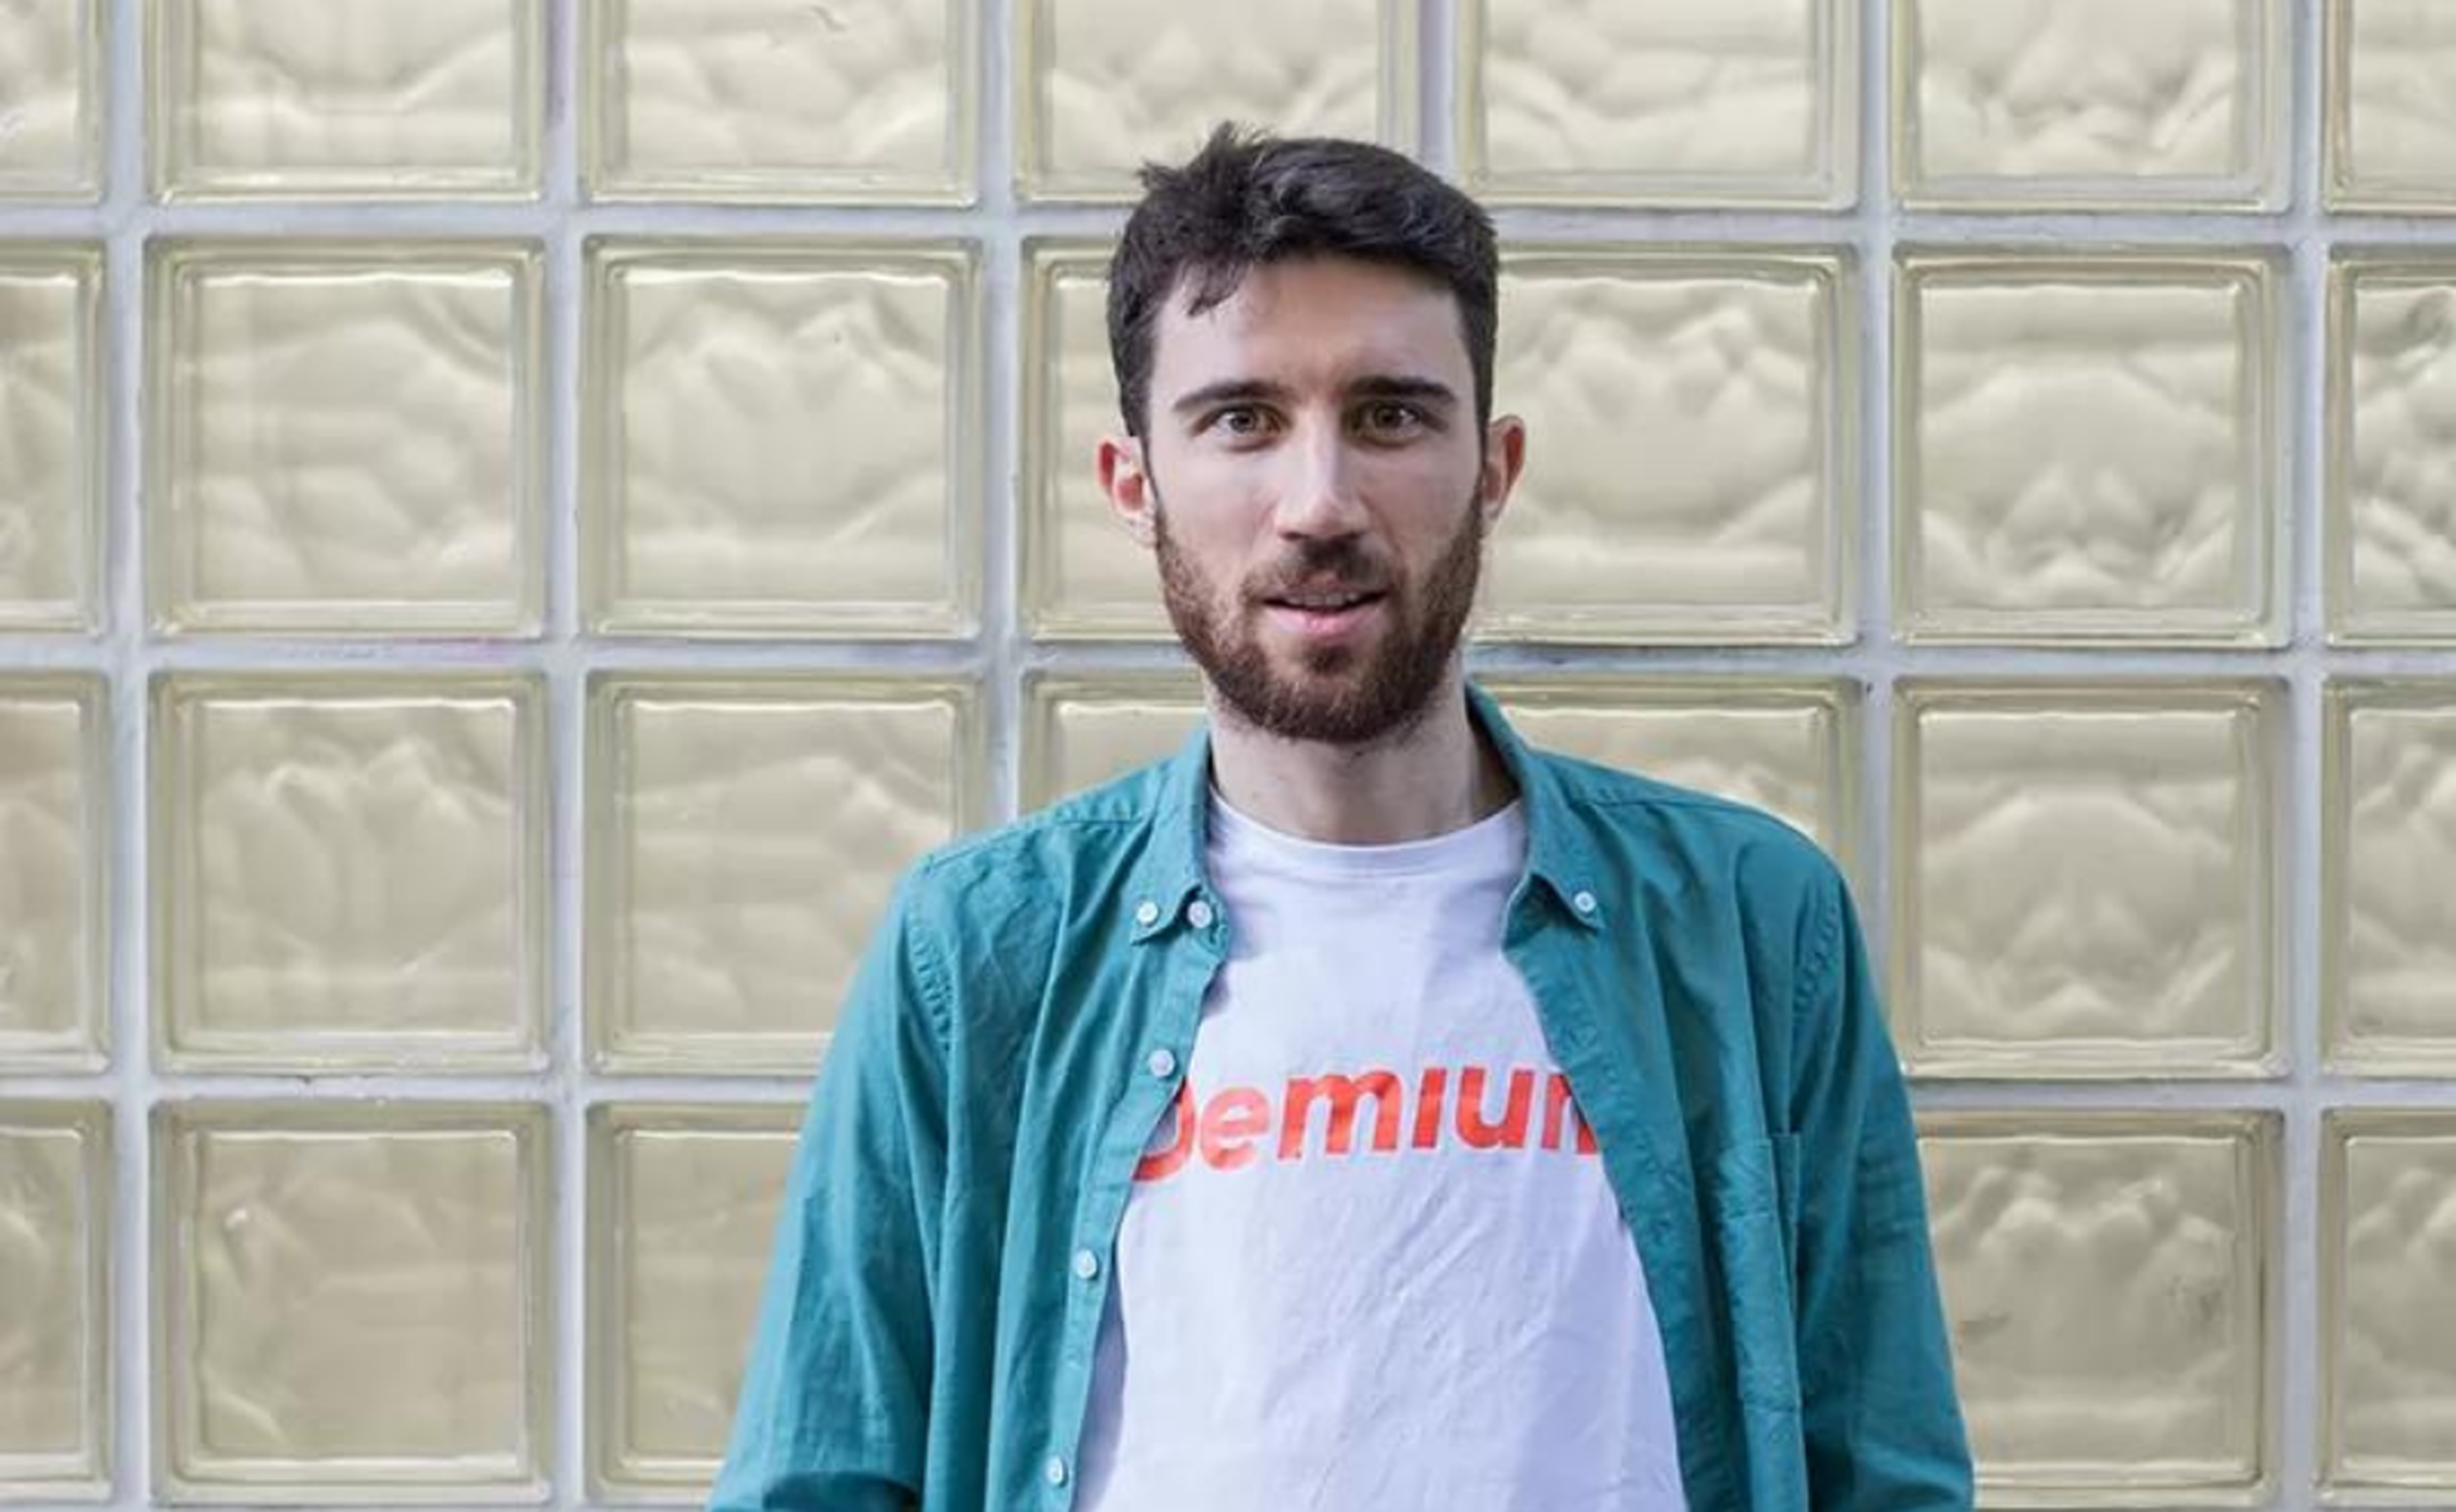 Jorge Dobón, fundador de Demium Startups, que ayuda a emprendedores y empresas emergentes a desarrollar su proyecto y captar sus primeros fondos.